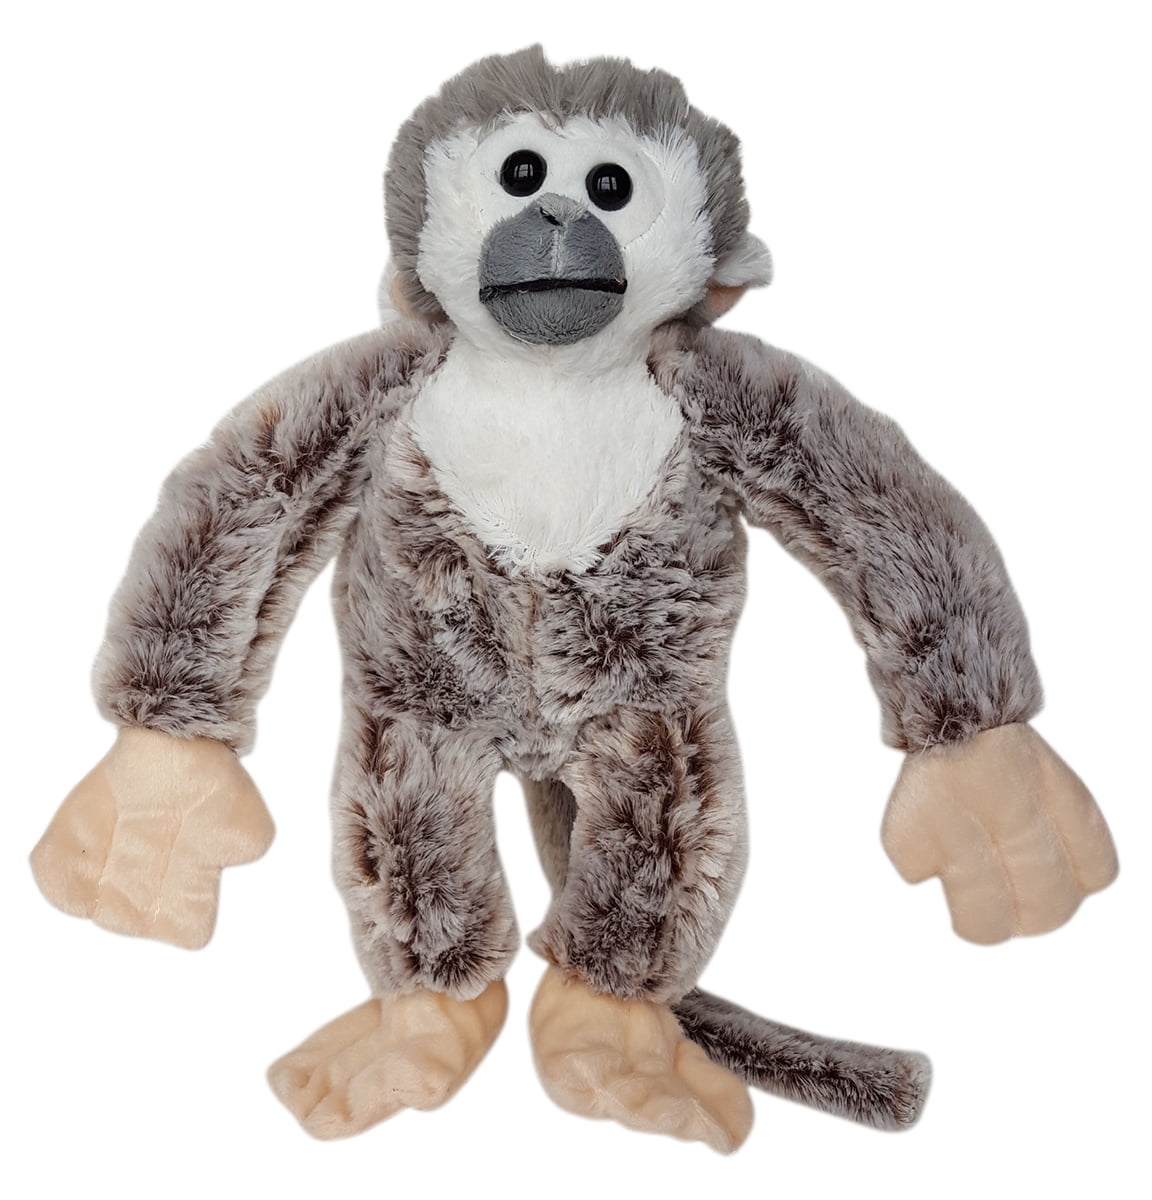 Teddy Mounta Cuddly Soft 16 inch Stuffed Monkey We stuff 'em...you love 'em!